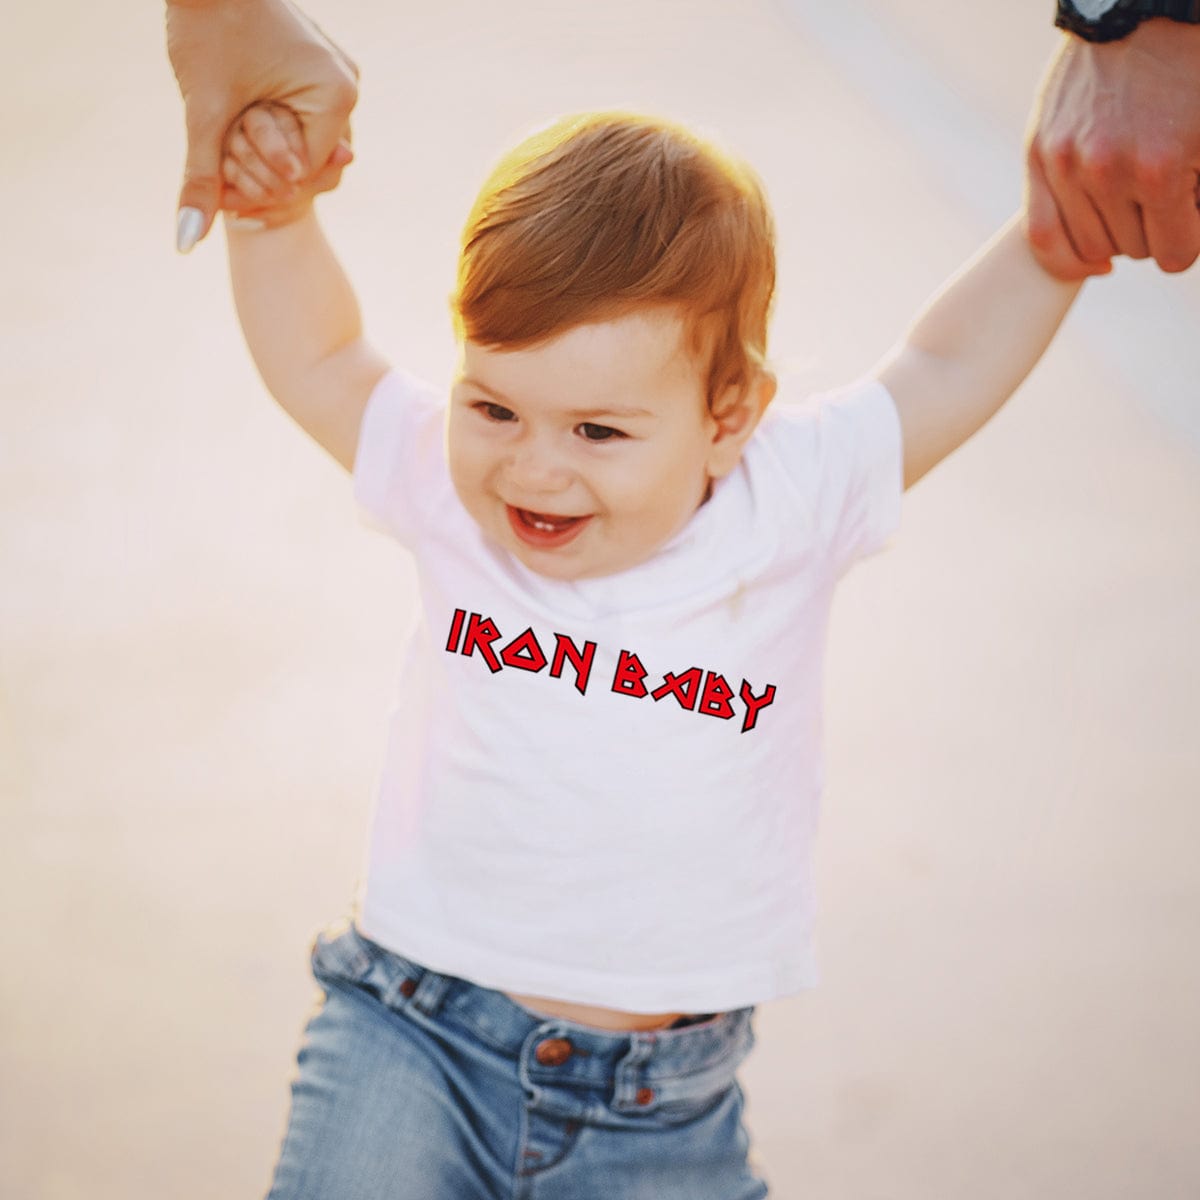 Lol T-Shirt T-shirt Iron Baby (Iron Maiden Tribute)